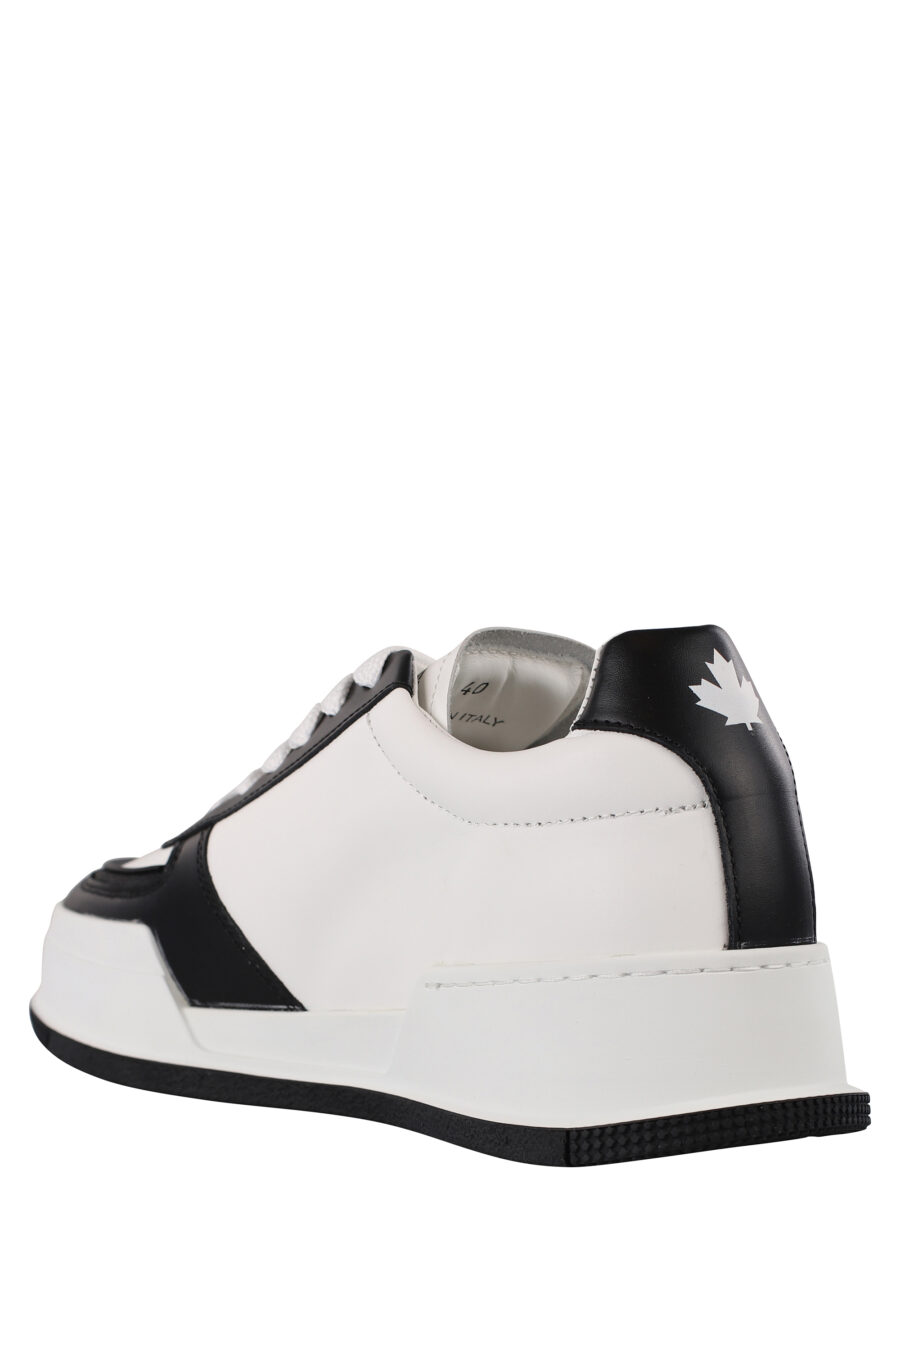 Zapatillas blancas con negro y hoja blanca - IMG 1213